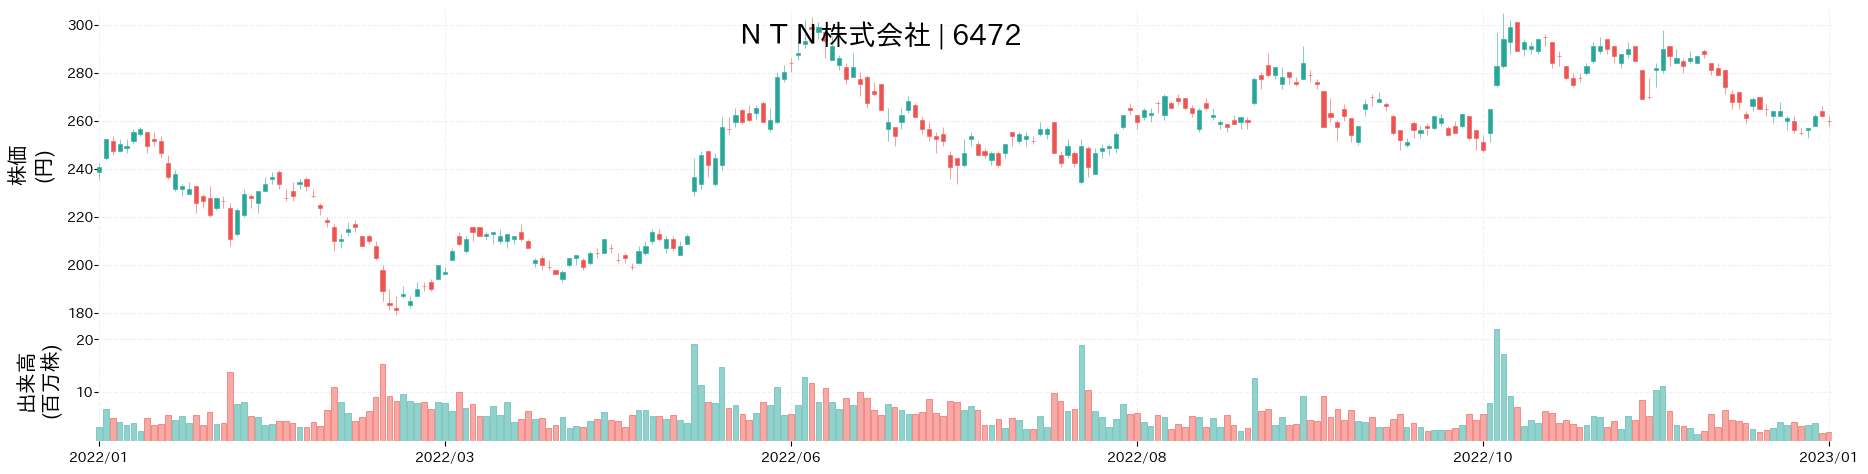 NTNの株価推移(2022)